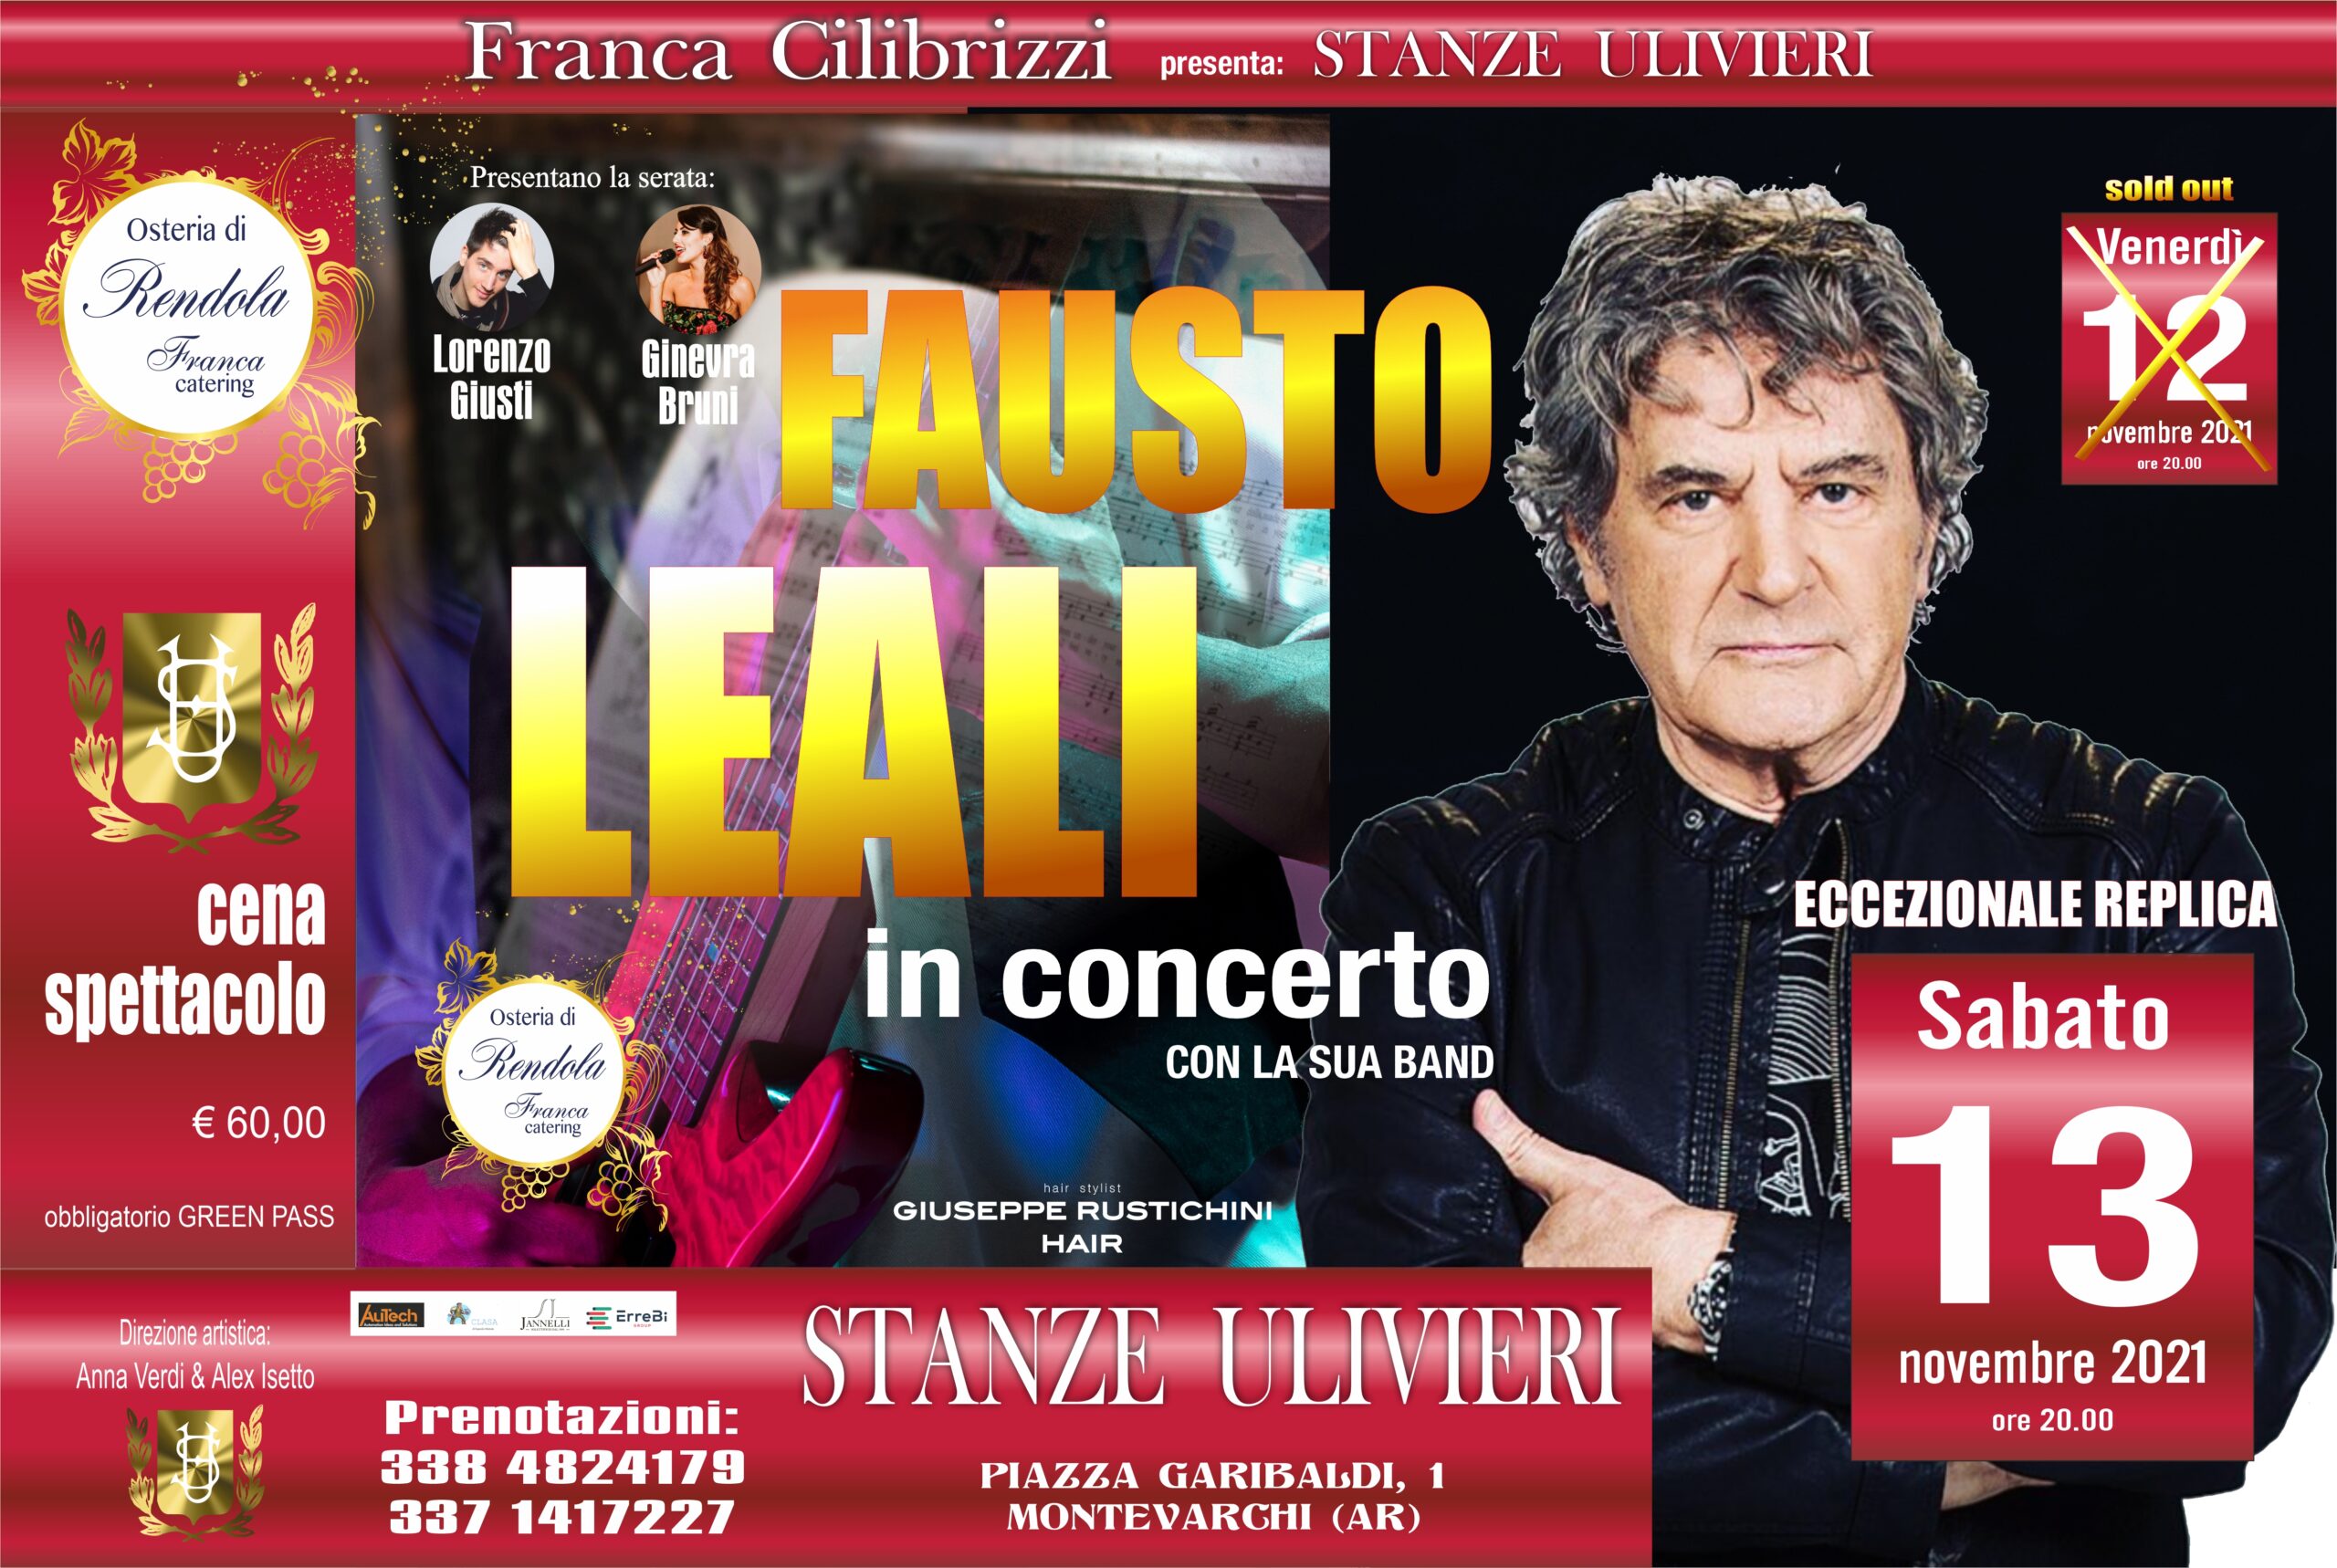 Fausto Leali in concerto alle Stanze Ulivieri di Montevarchi